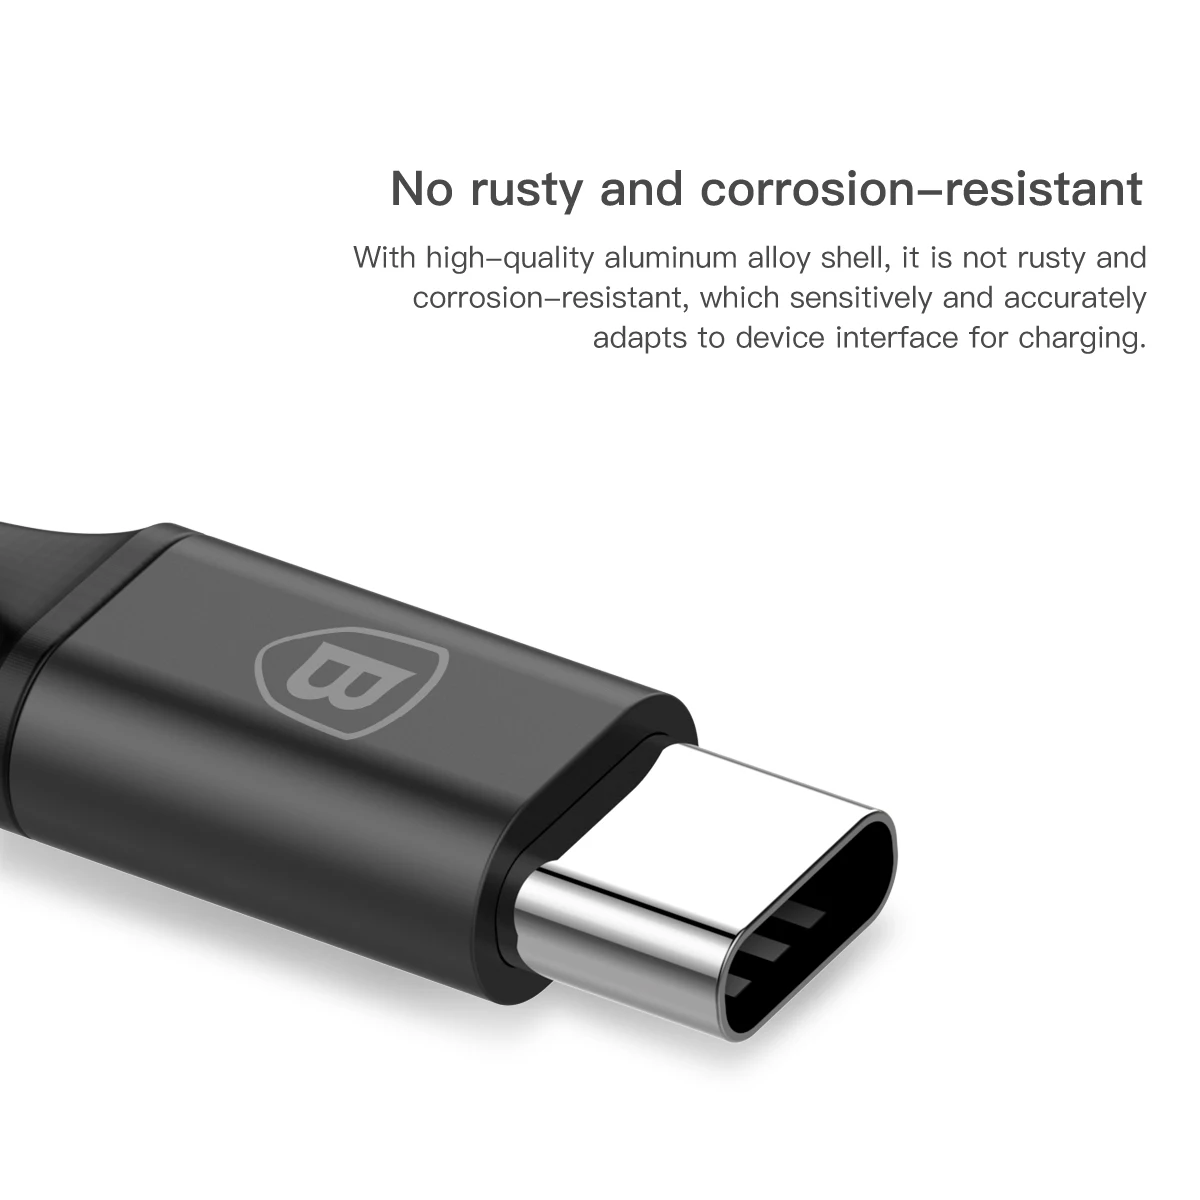 Usb-кабель Baseus для iPhone 11 Pro Max Macbook, зарядный кабель USB type C, кабель для iPhone Xs Max X, шнур для быстрой зарядки